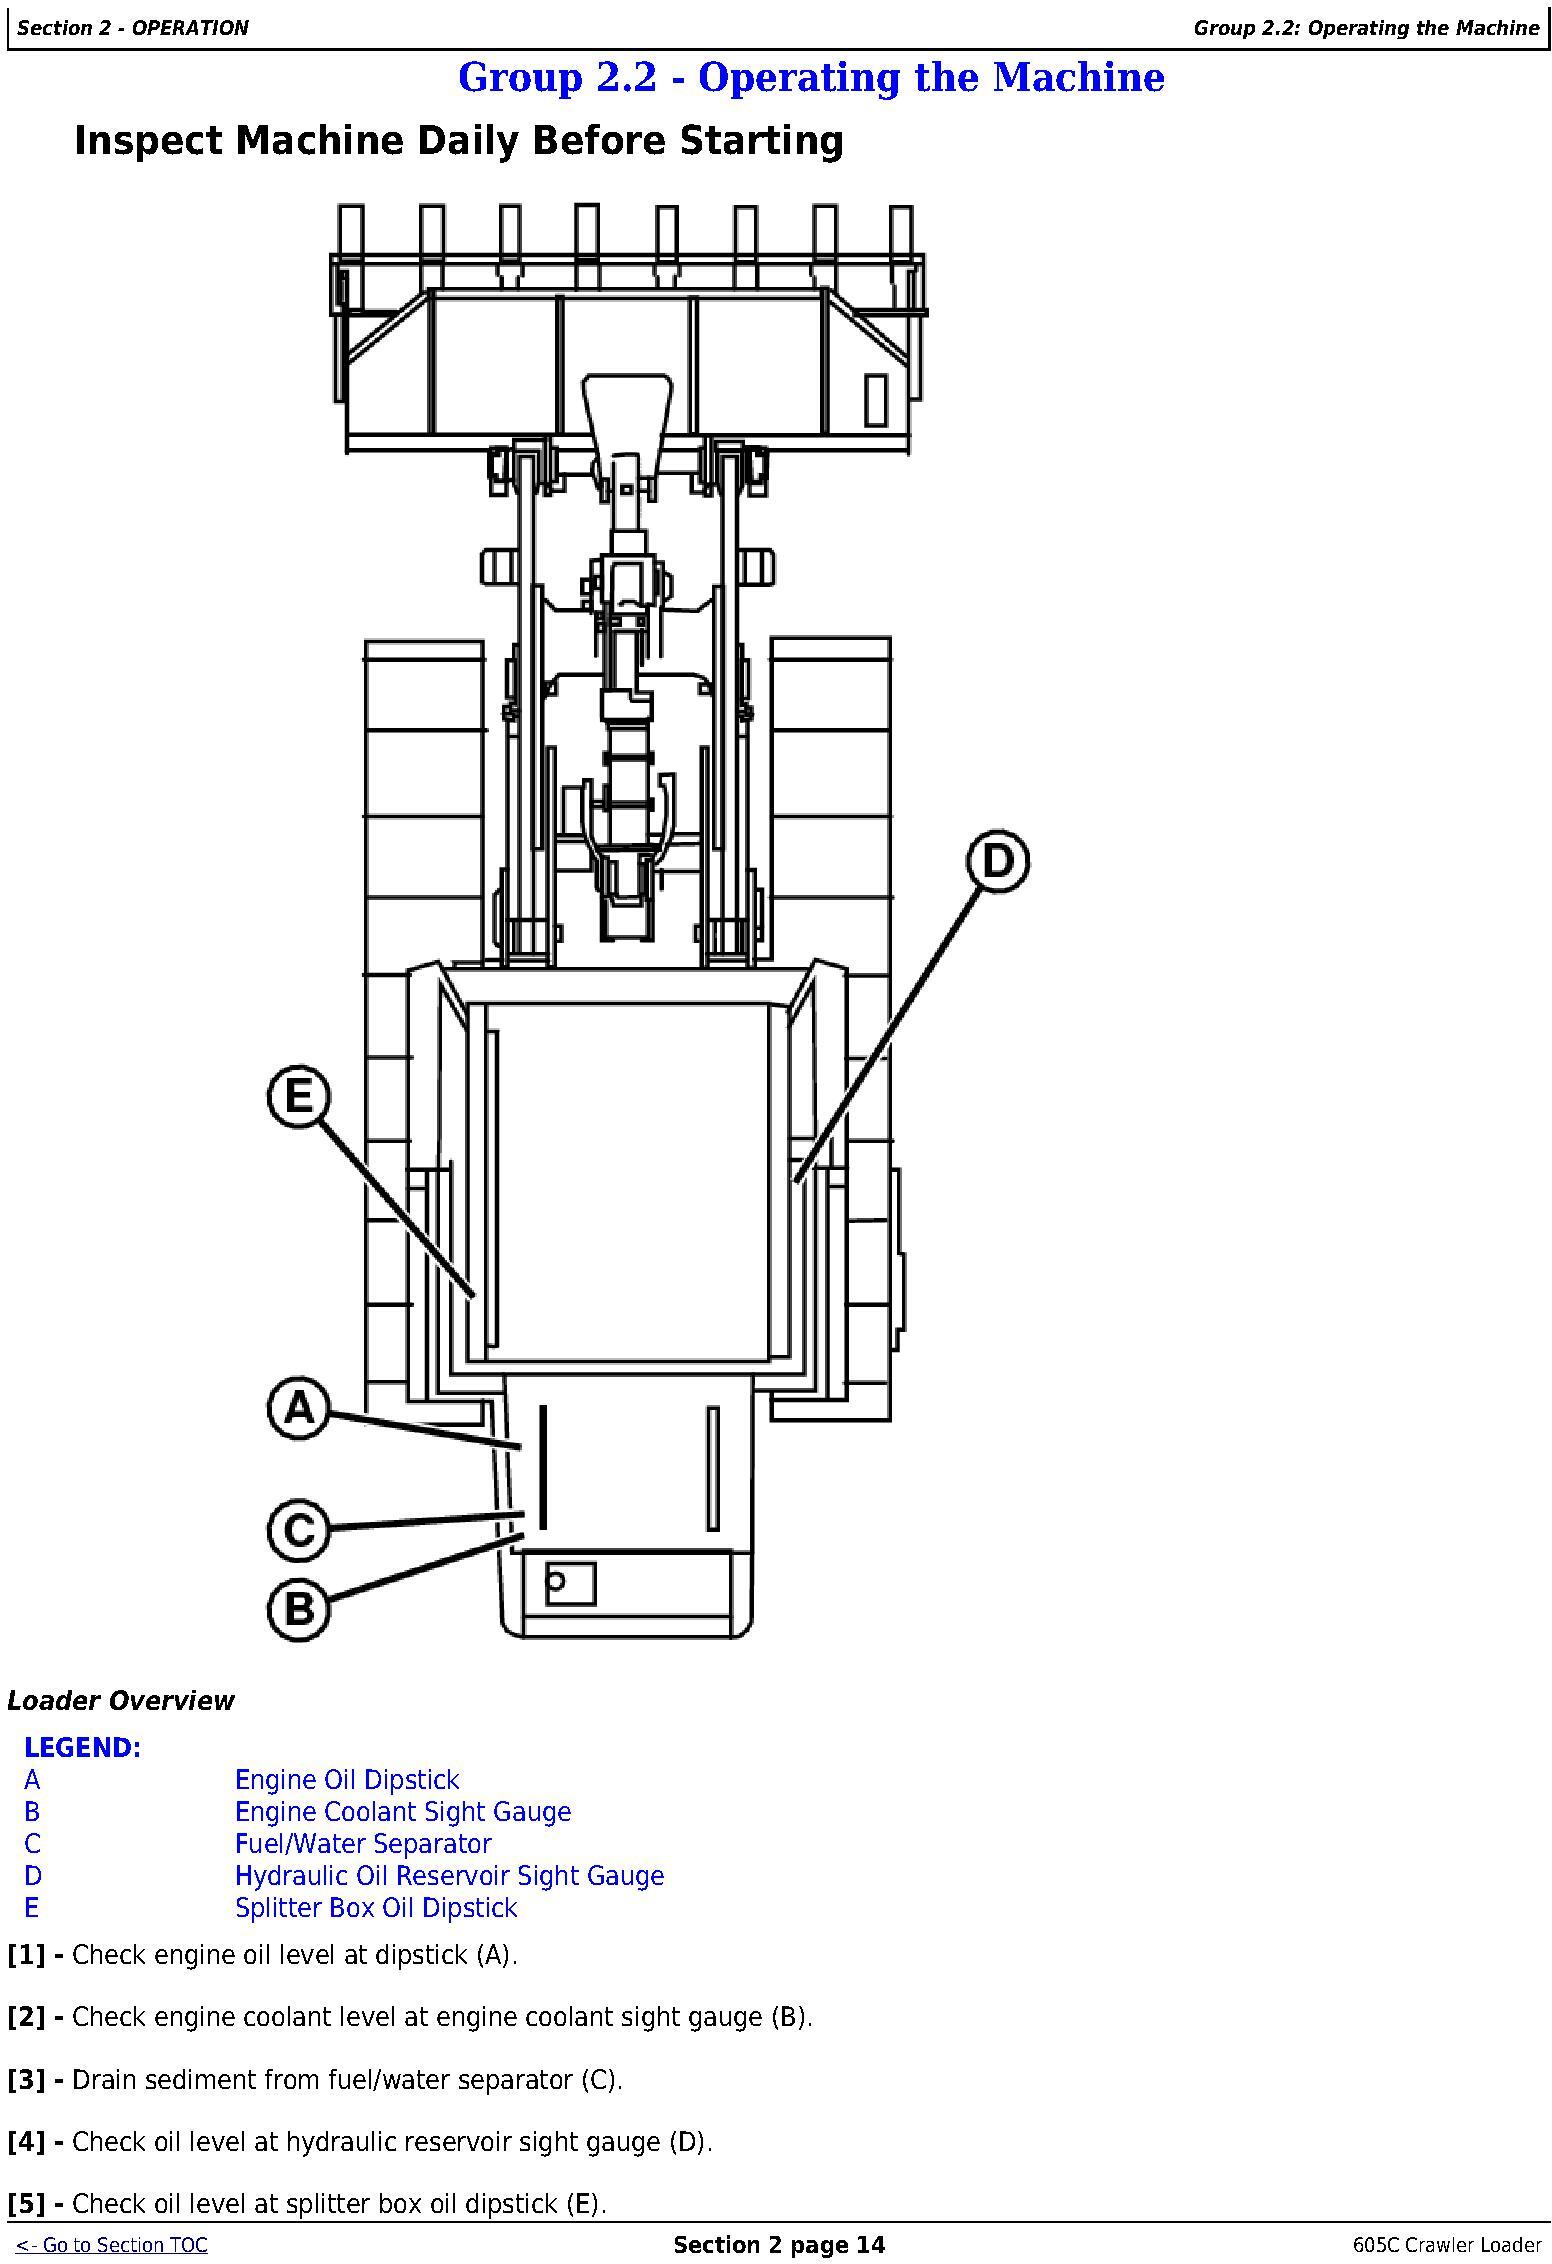 OMT217598 - John Deere 605C Crawler Loader Operators Manual - 3